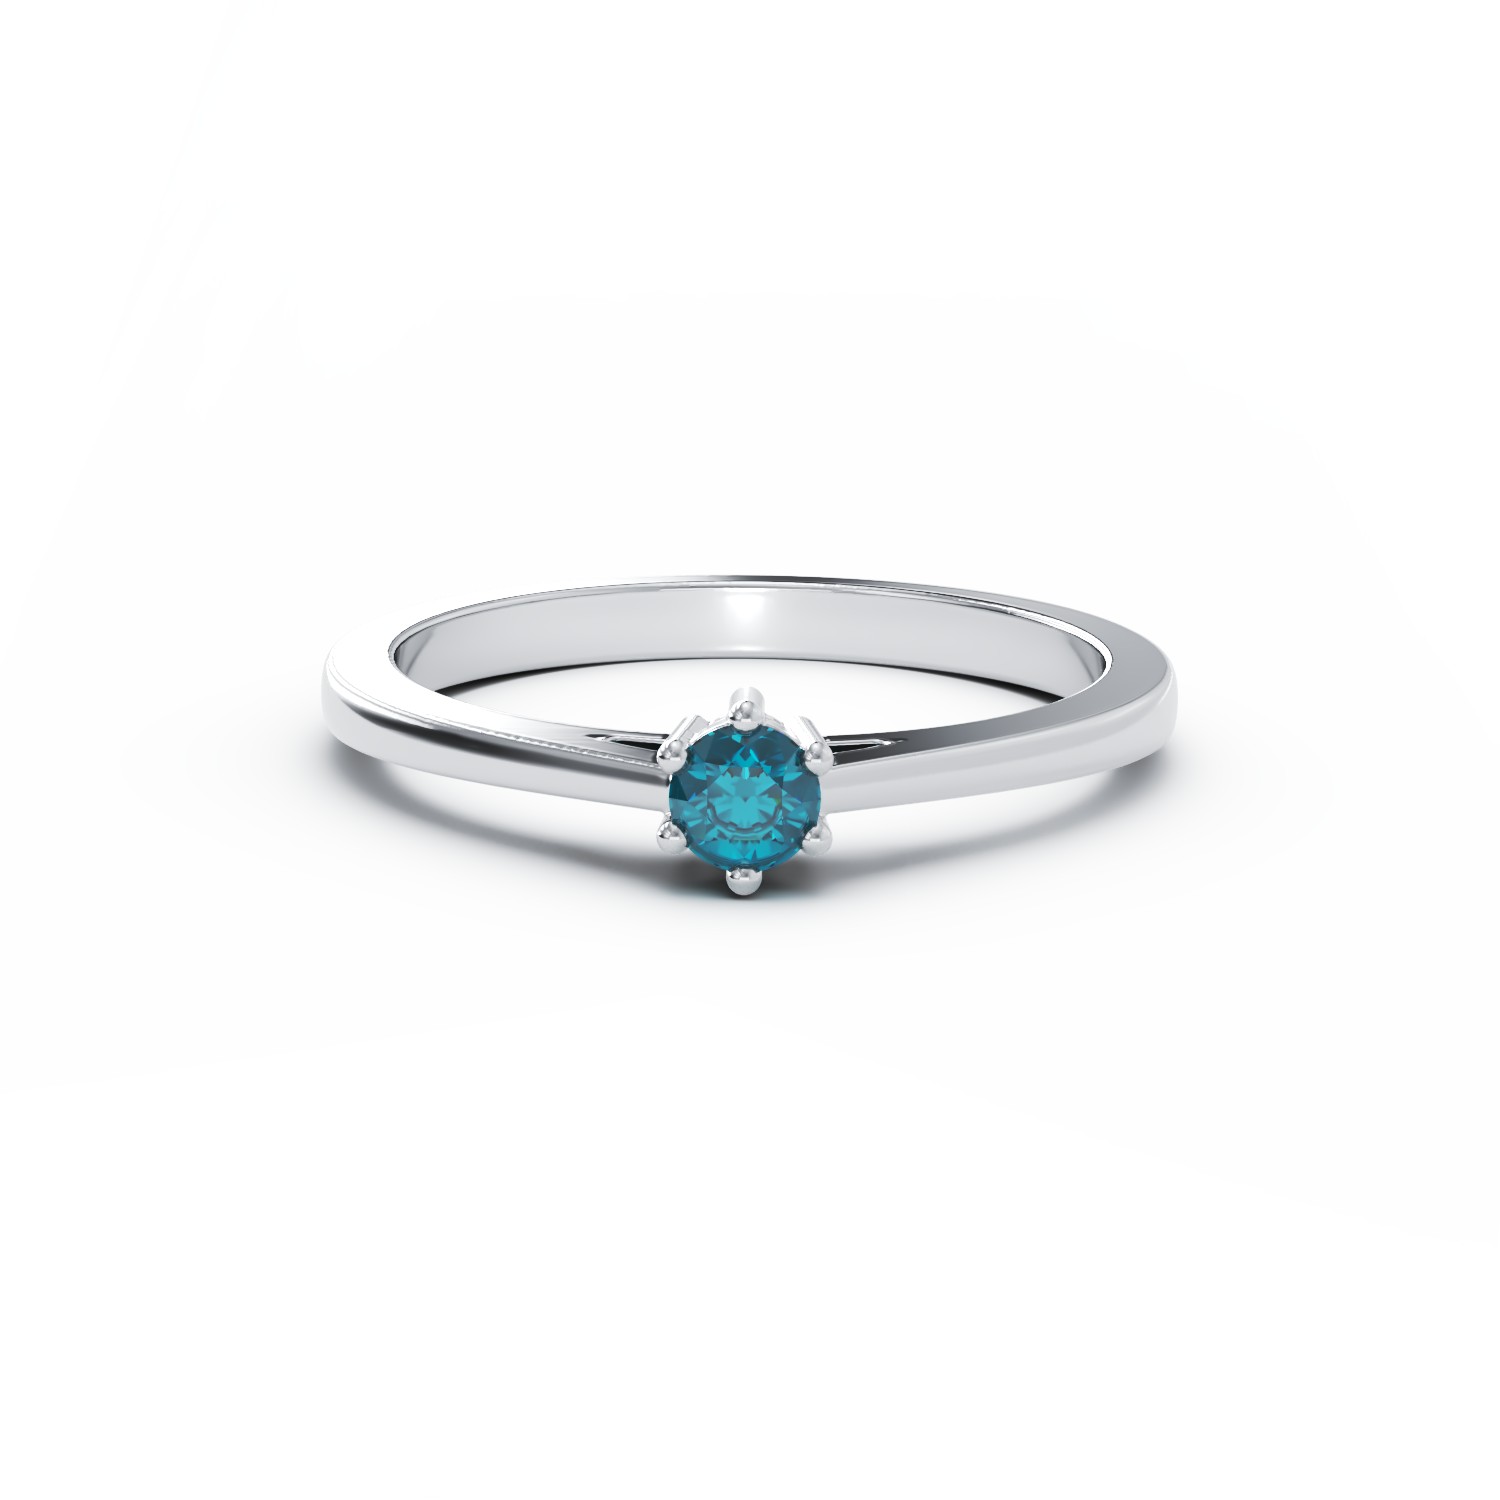 18 karátos fehérarany eljegyzési gyűrű 0.4 karátos kék gyémánttal